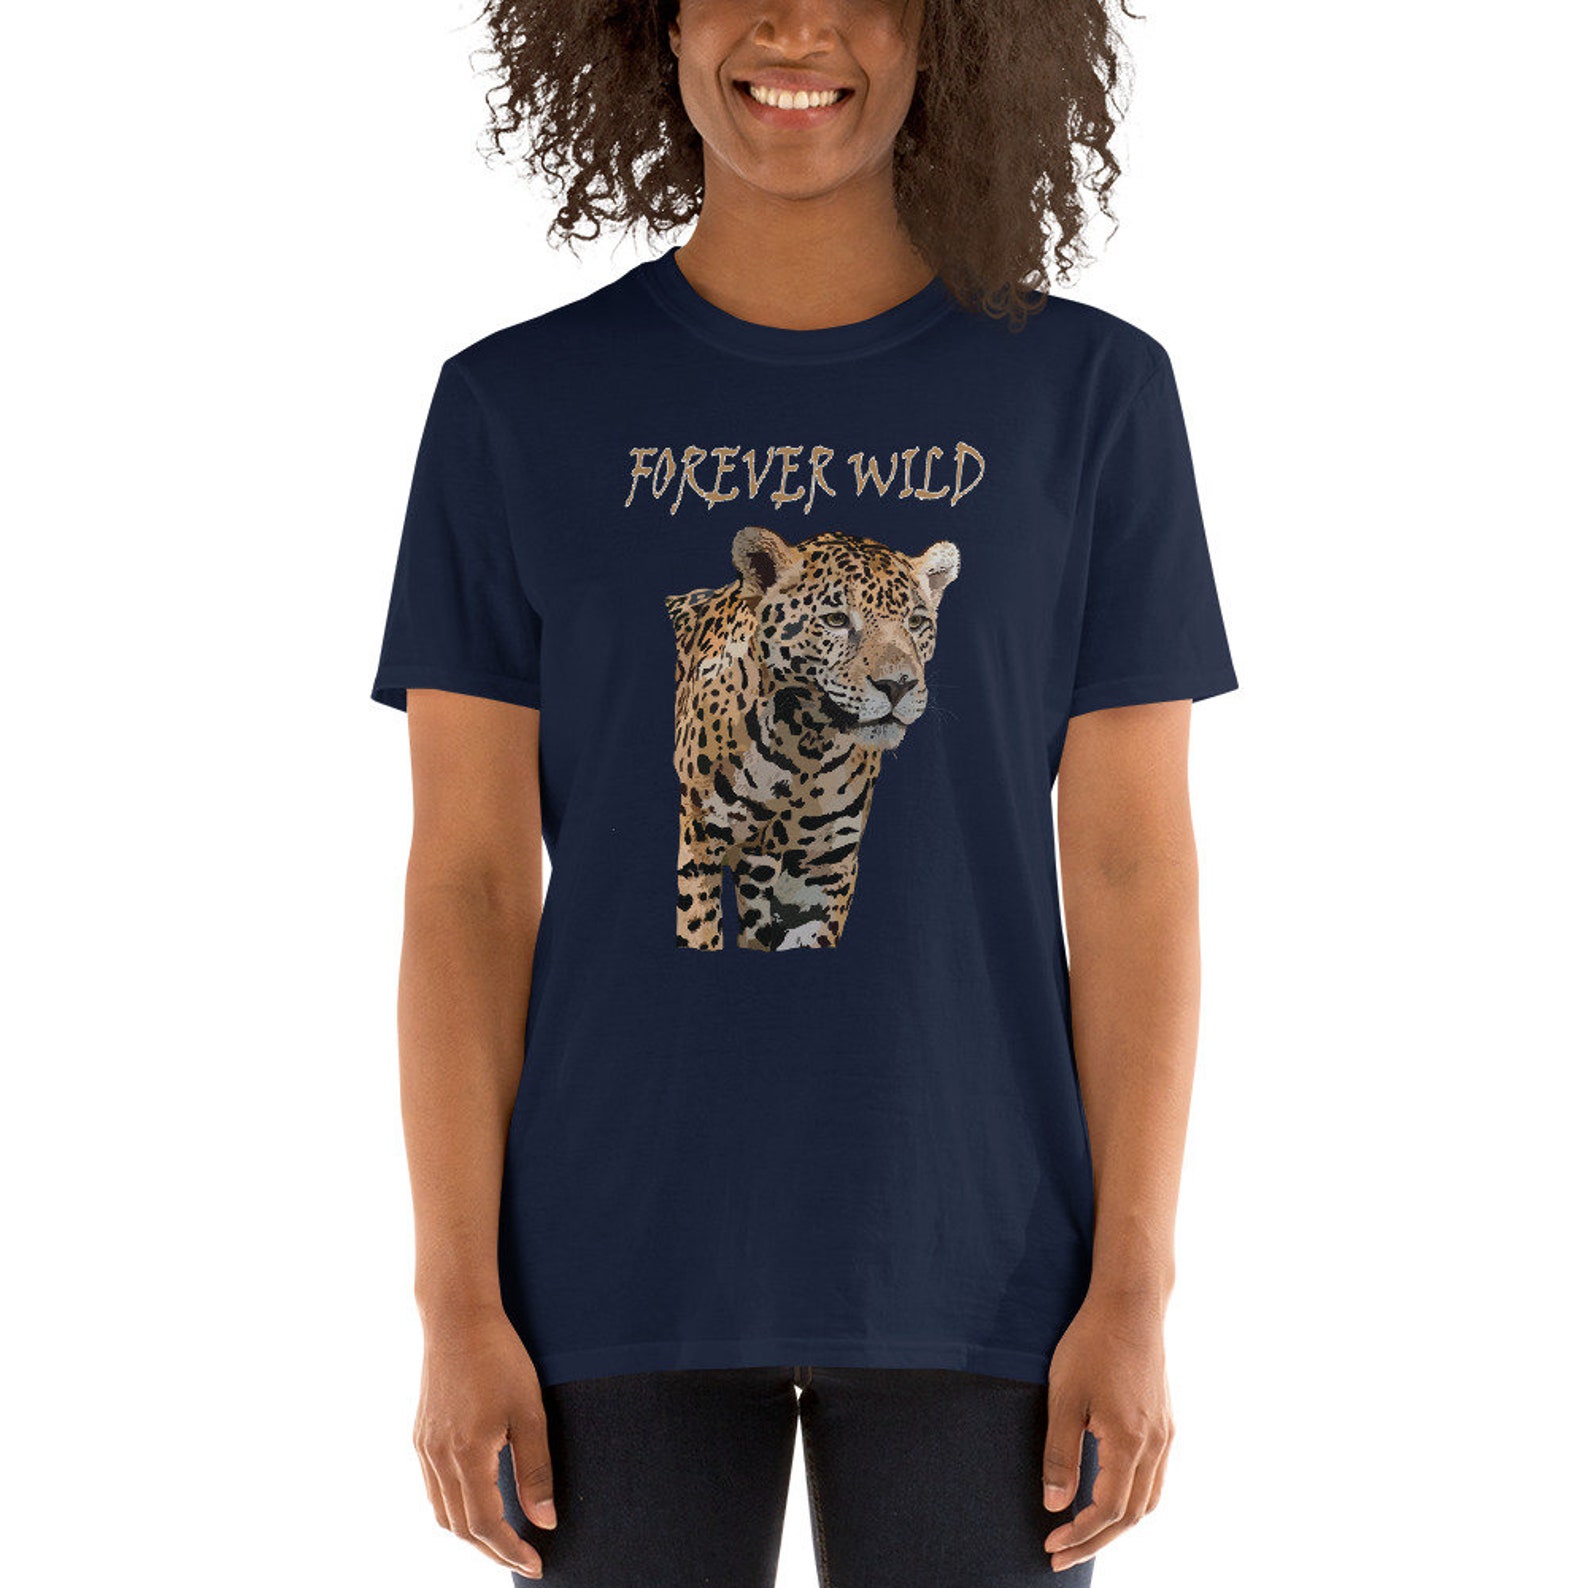 Jaguar T-shirt Jaguar Short Sleeve Shirt Wildlife T-shirt | Etsy